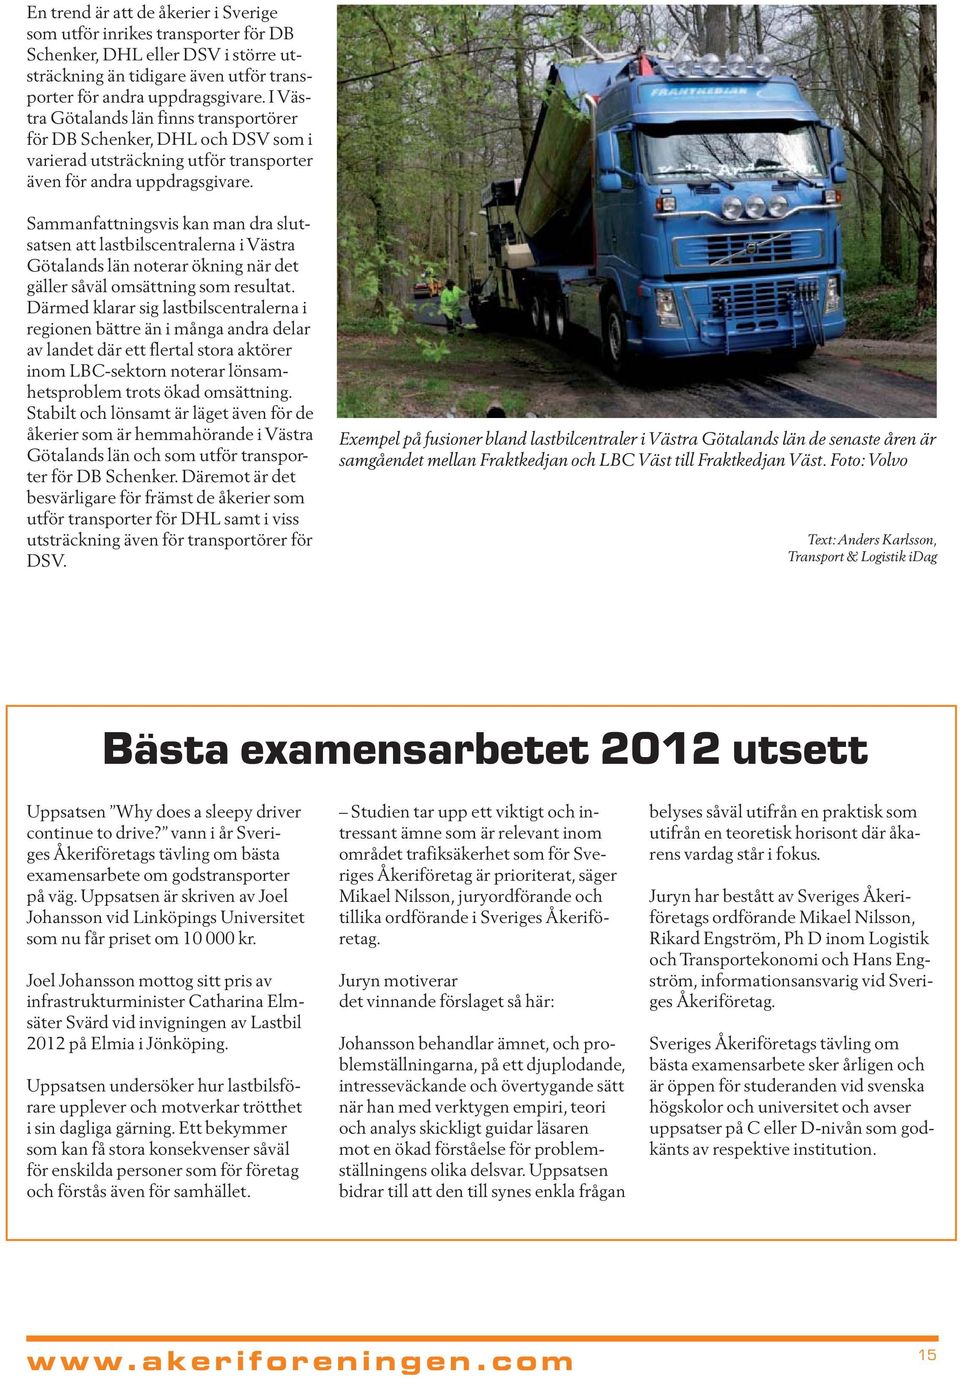 Sammanfattningsvis kan man dra slutsatsen att lastbilscentralerna i Västra Götalands län noterar ökning när det gäller såväl omsättning som resultat.